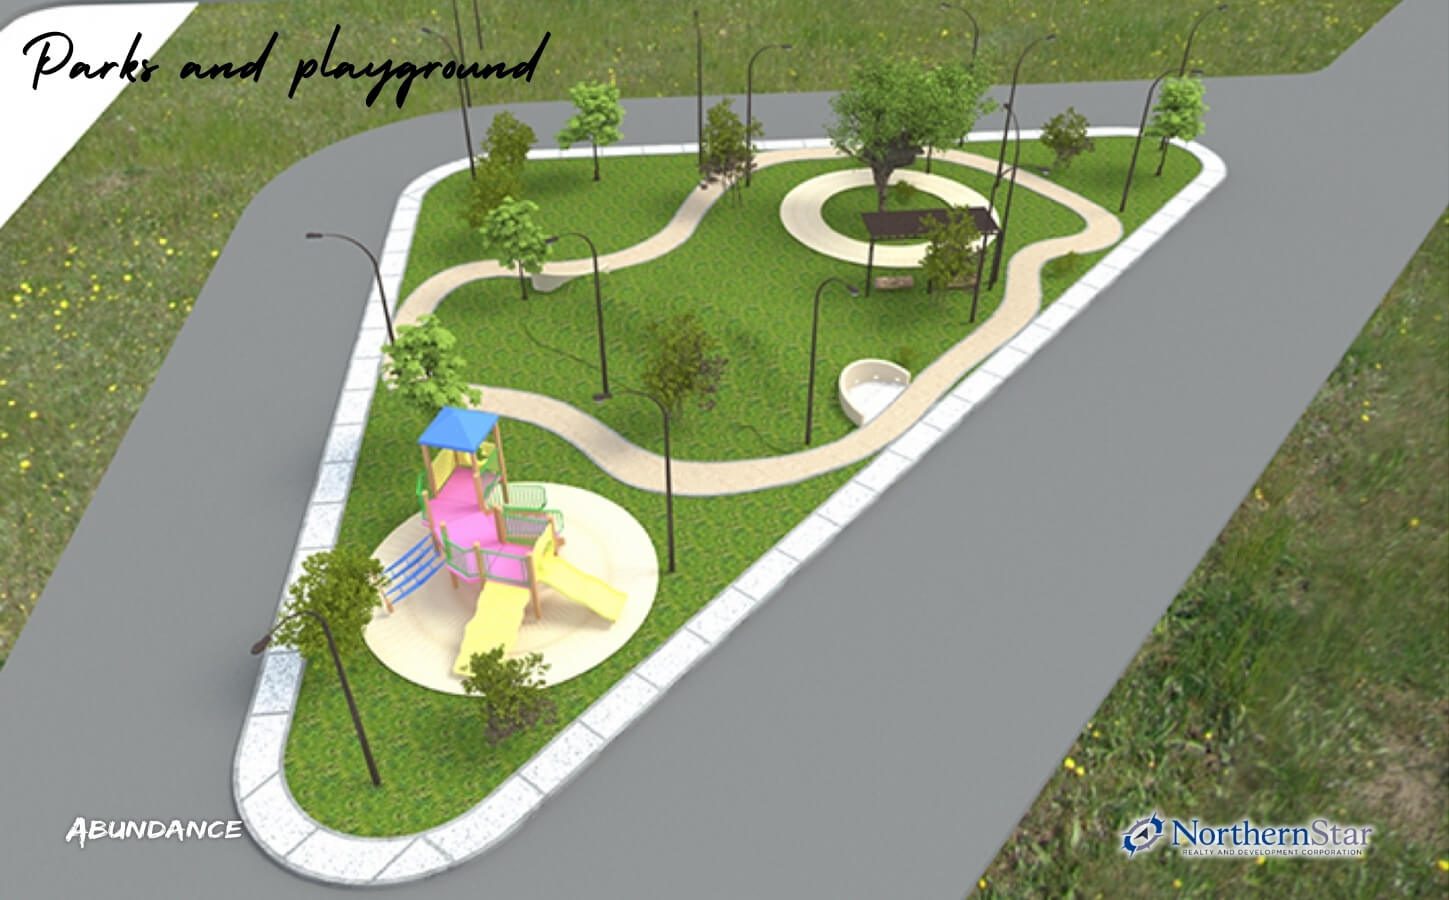 parks and playground - North grove residences Pampanga